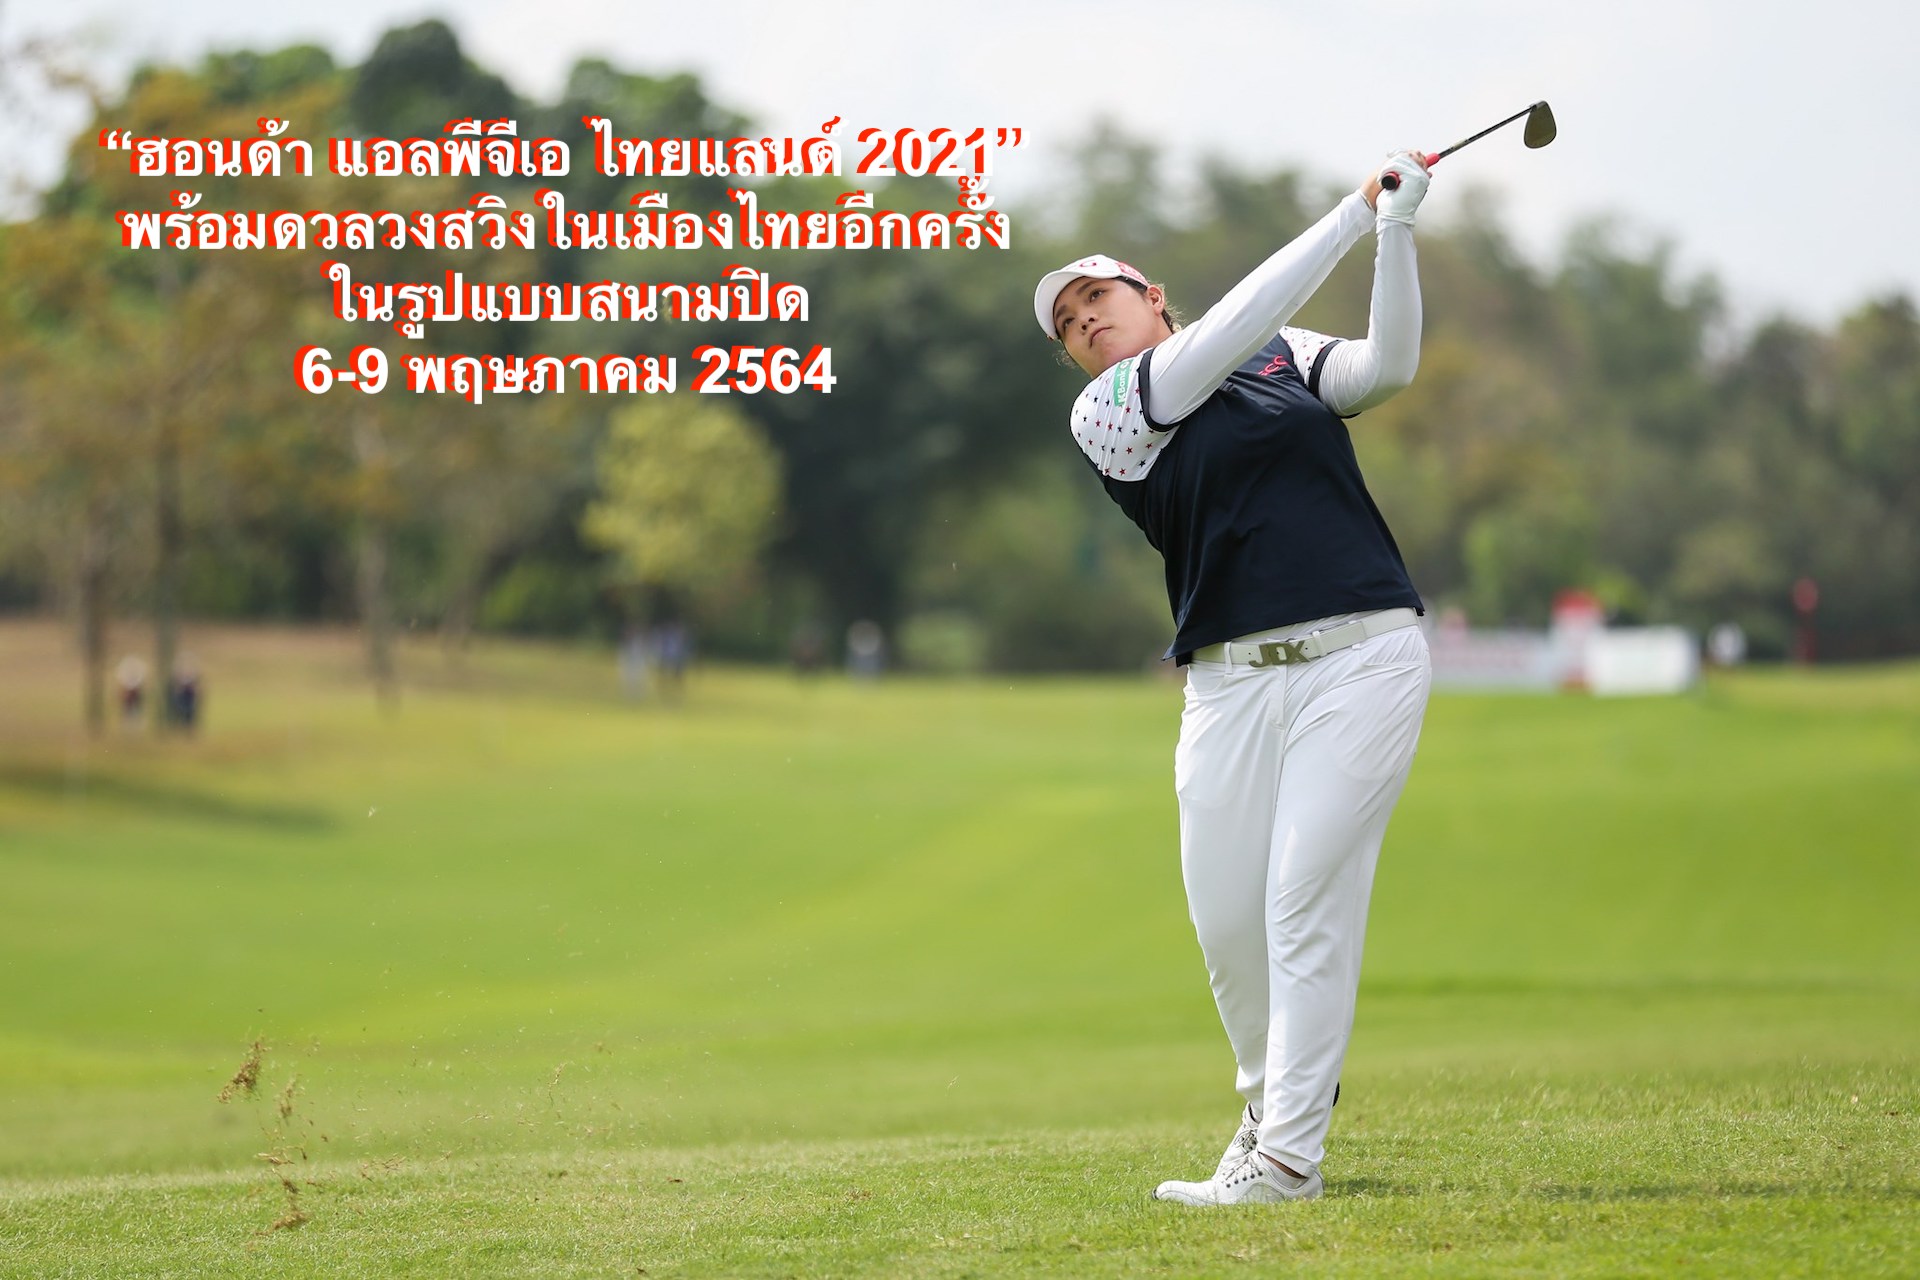 ฮอนด้า แอลพีจีเอ ไทยแลนด์ 2021 พร้อมดวลวงสวิงในเมืองไทยอีกครั้ง ในรูปแบบสนามปิด 6-9 พฤษภาคม 2564